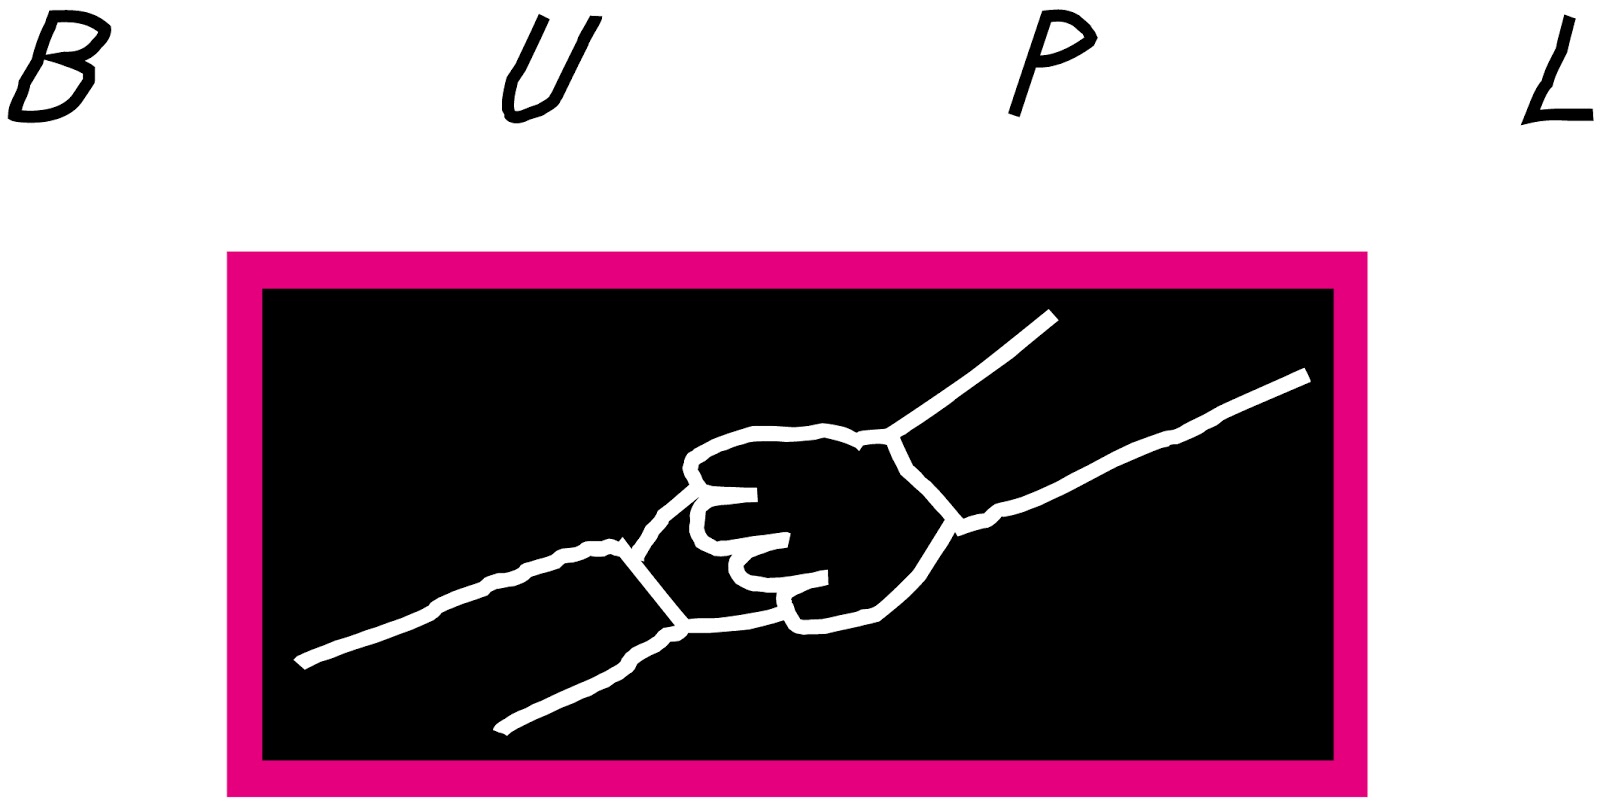 Image of BUPL logo